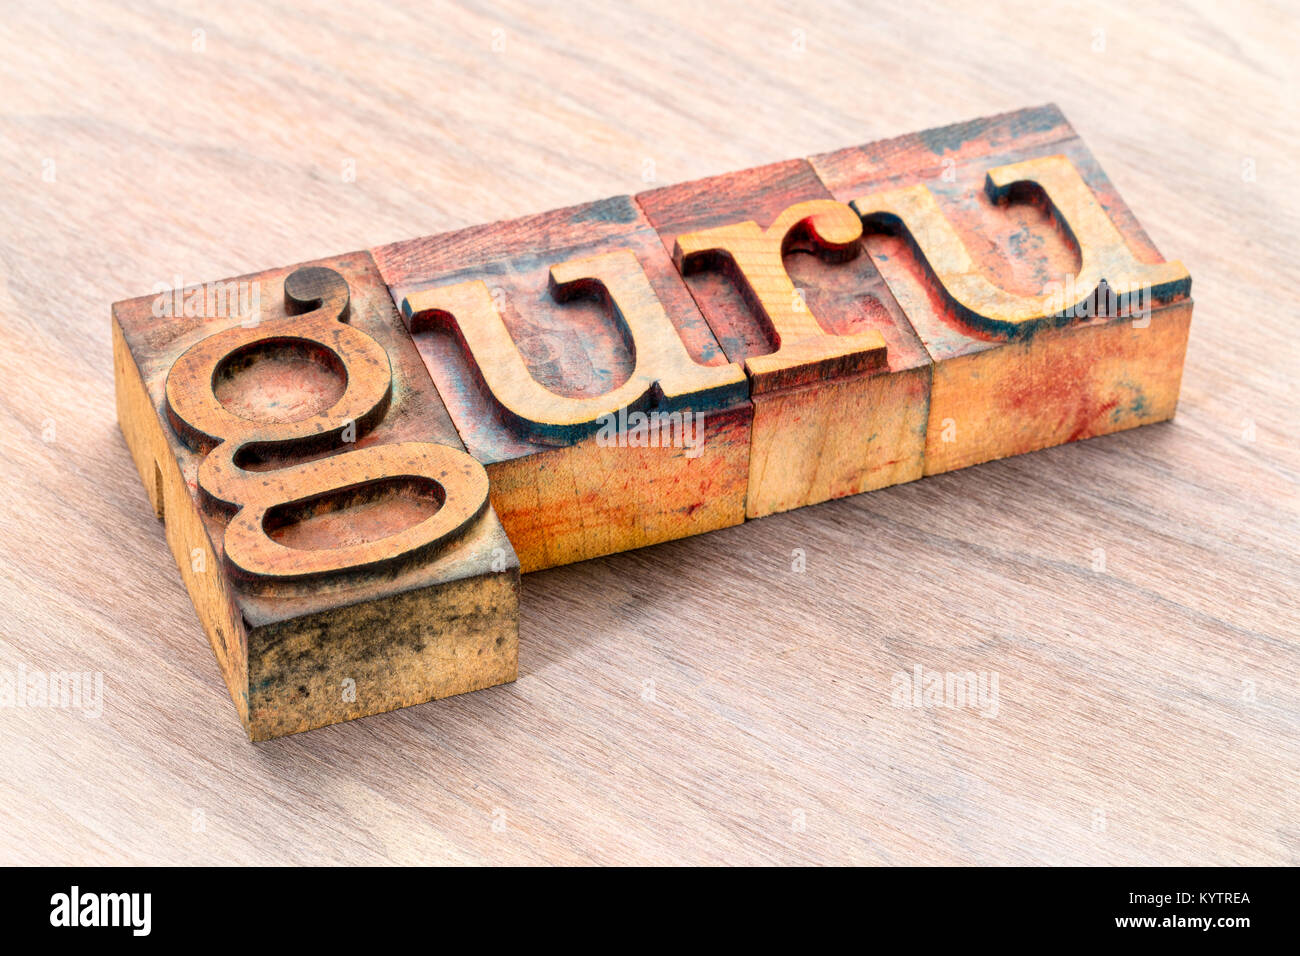 Guru mots- texte en typographie vintage type bois souillé par des blocs d'impression encres couleur Banque D'Images